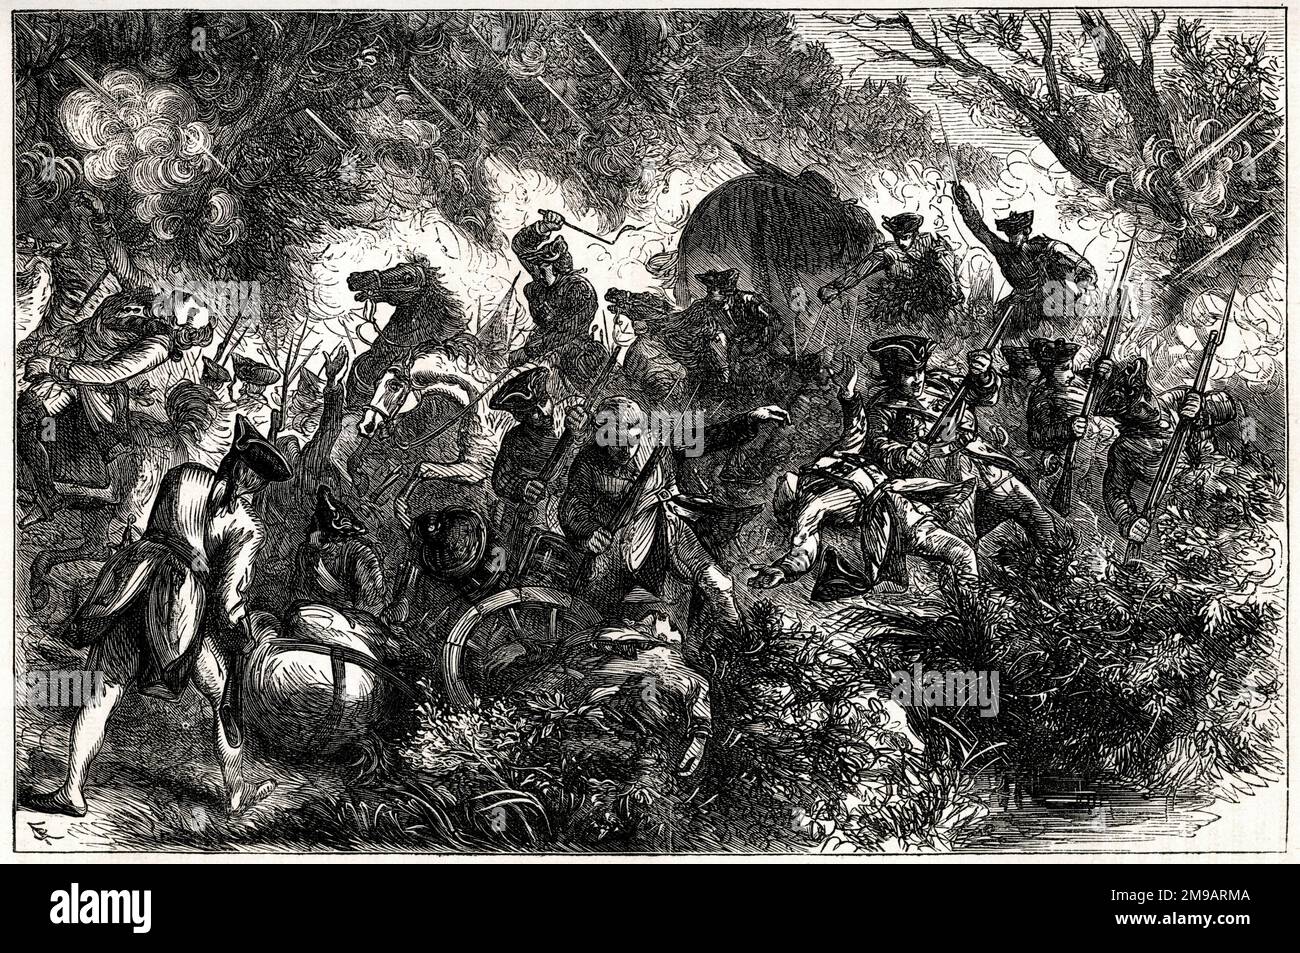 La forza del maggiore Generale Edward Braddock attaccò durante una spedizione contro l'Ohio River Valley, occupata dai francesi, il 9 luglio 1755; morì di ferite qualche giorno dopo. La battaglia ebbe luogo nelle prime fasi della guerra francese e indiana (1754-1763). Foto Stock